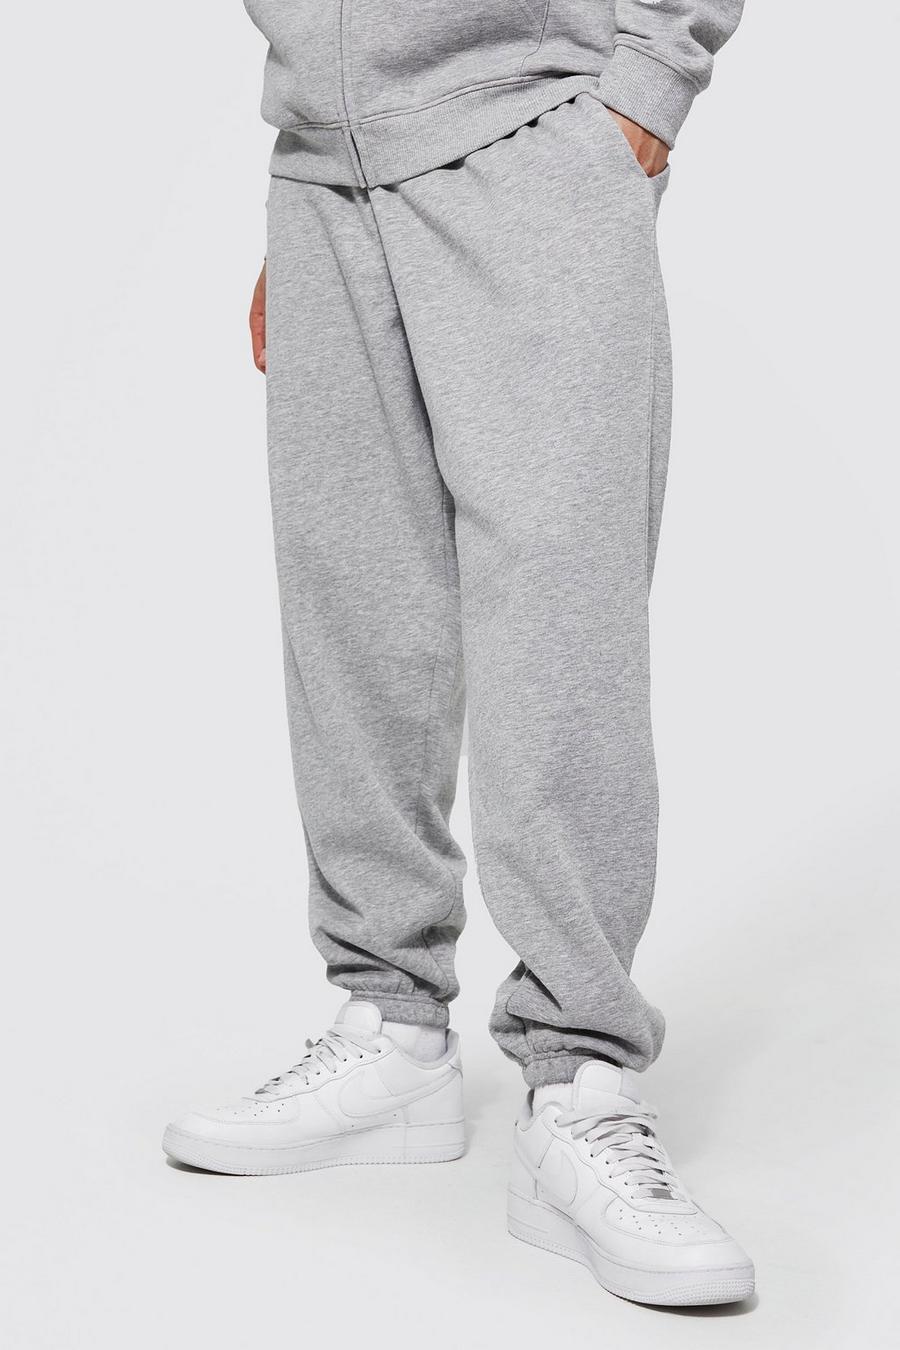 Pantalón deportivo Tall básico holgado con algodón ecológico, Grey marl image number 1